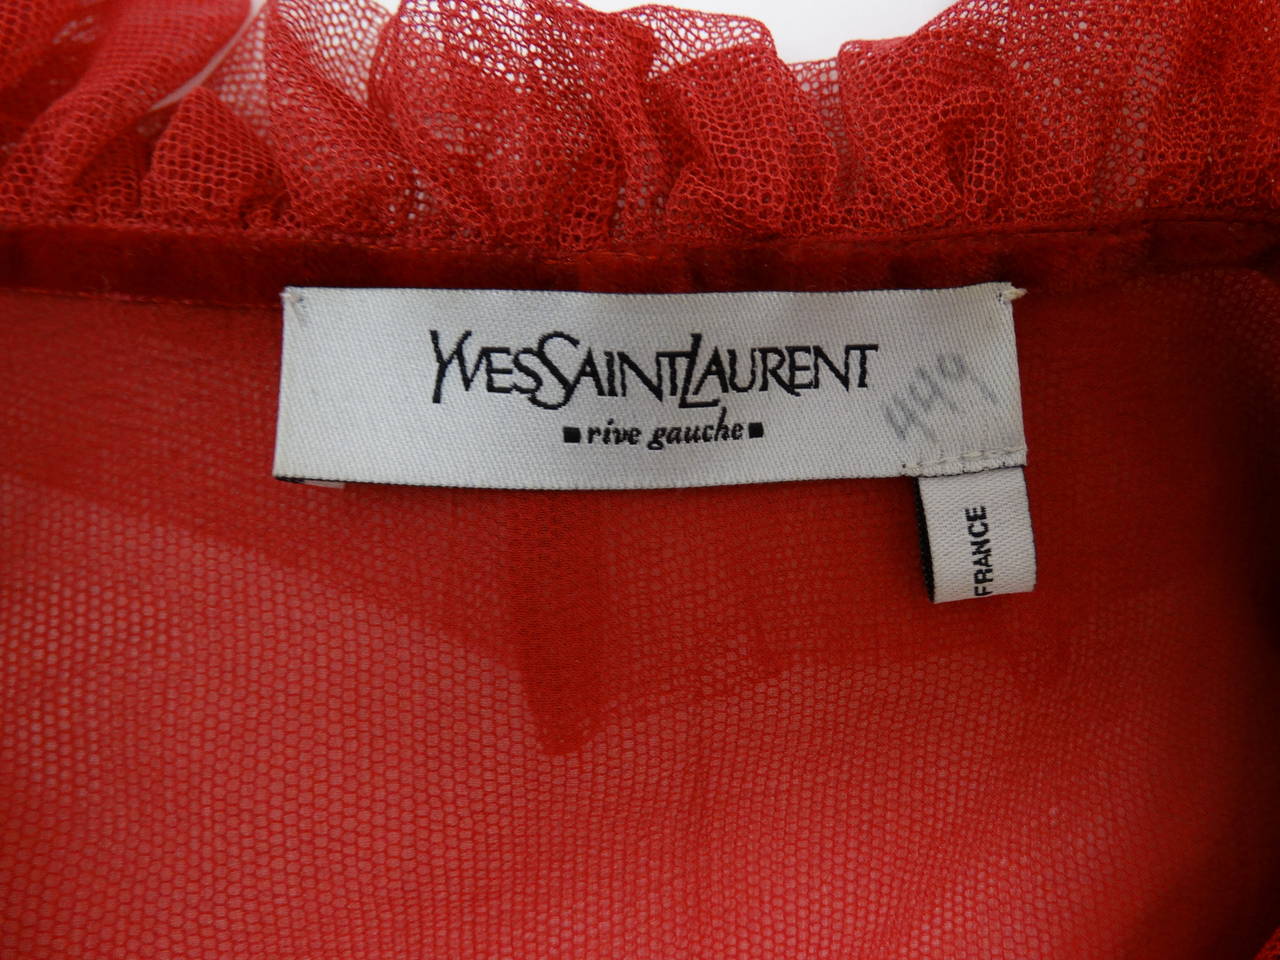 Très rare blouse et jupe en filet de soie rouge à volants, dessinées par Tom Ford pour Yves Saint Laurent, automne 2002. L'ensemble convient aux tailles 2 à 4. Le chemisier mesure : 32-34